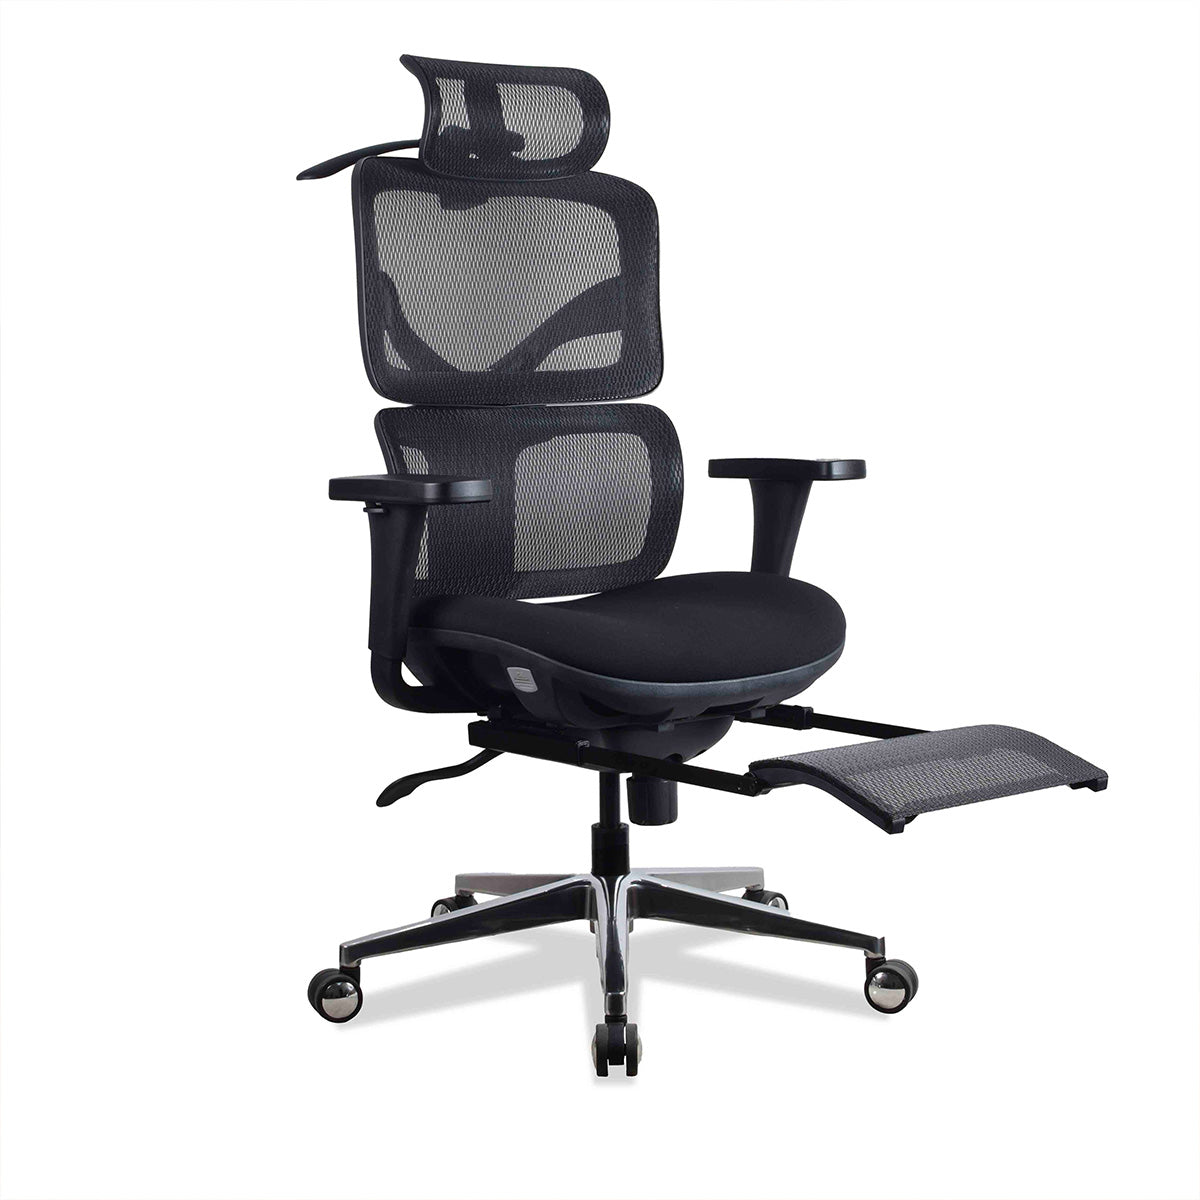 Chaise de bureau ergonomique : l'Osteoseat